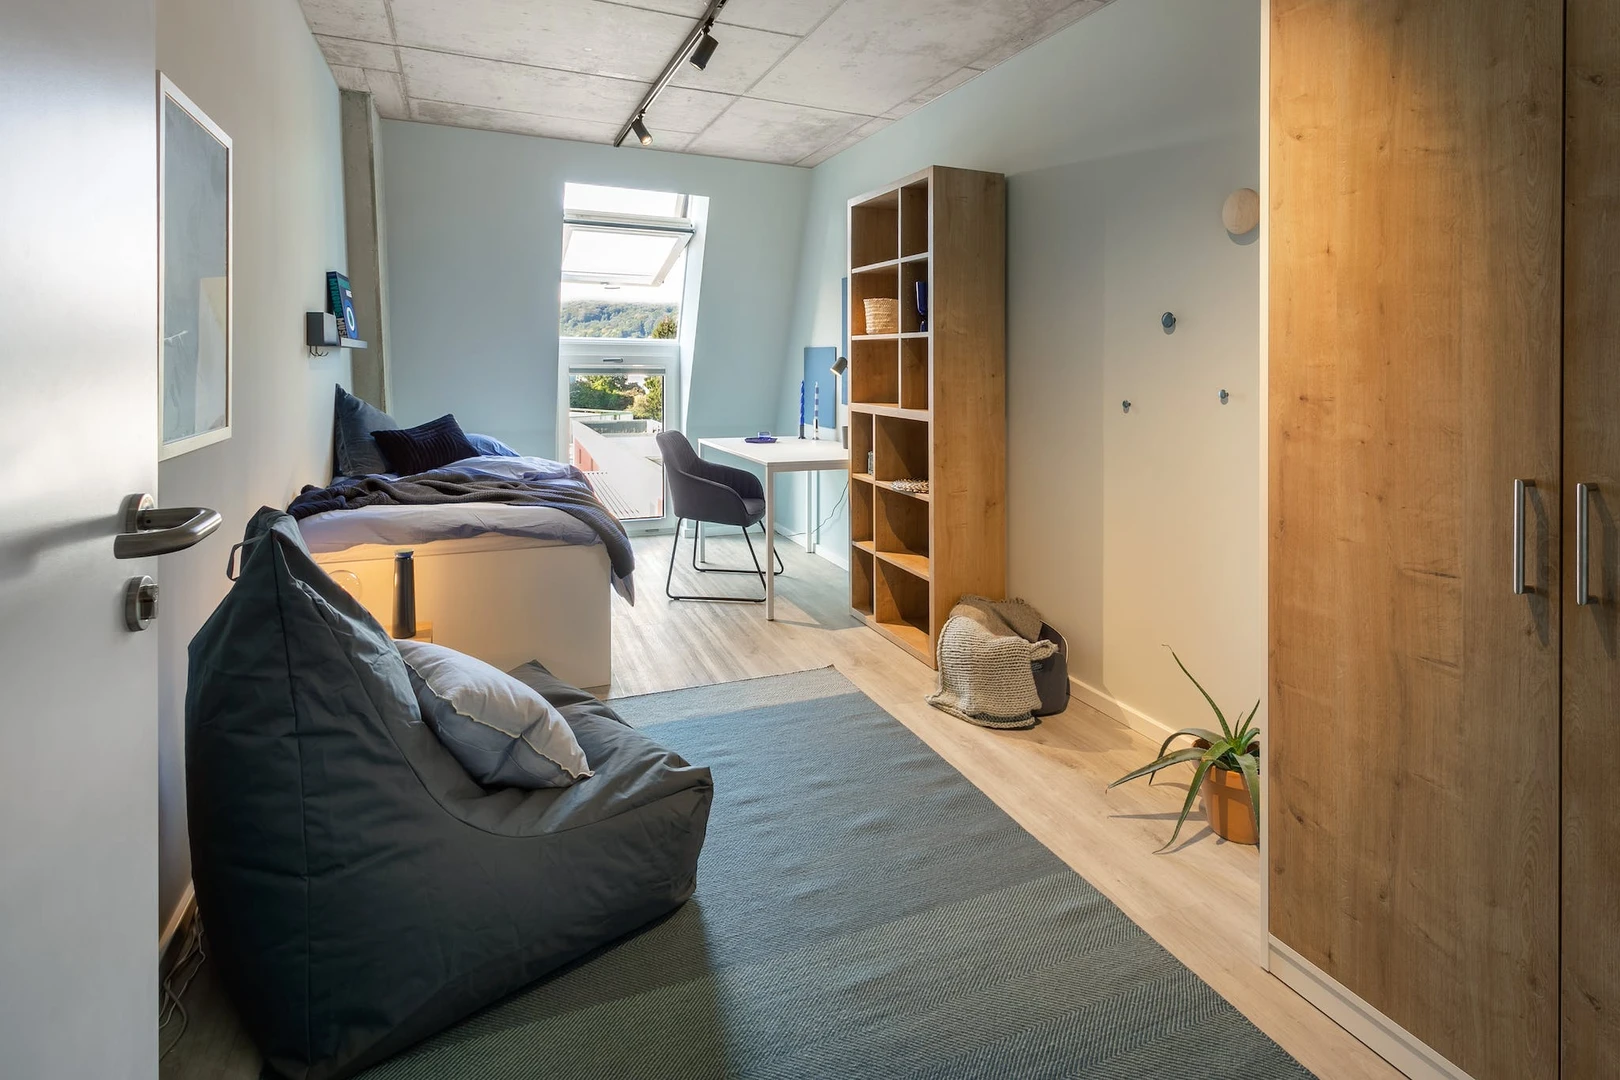 Alquiler de habitación en piso compartido en Wuppertal